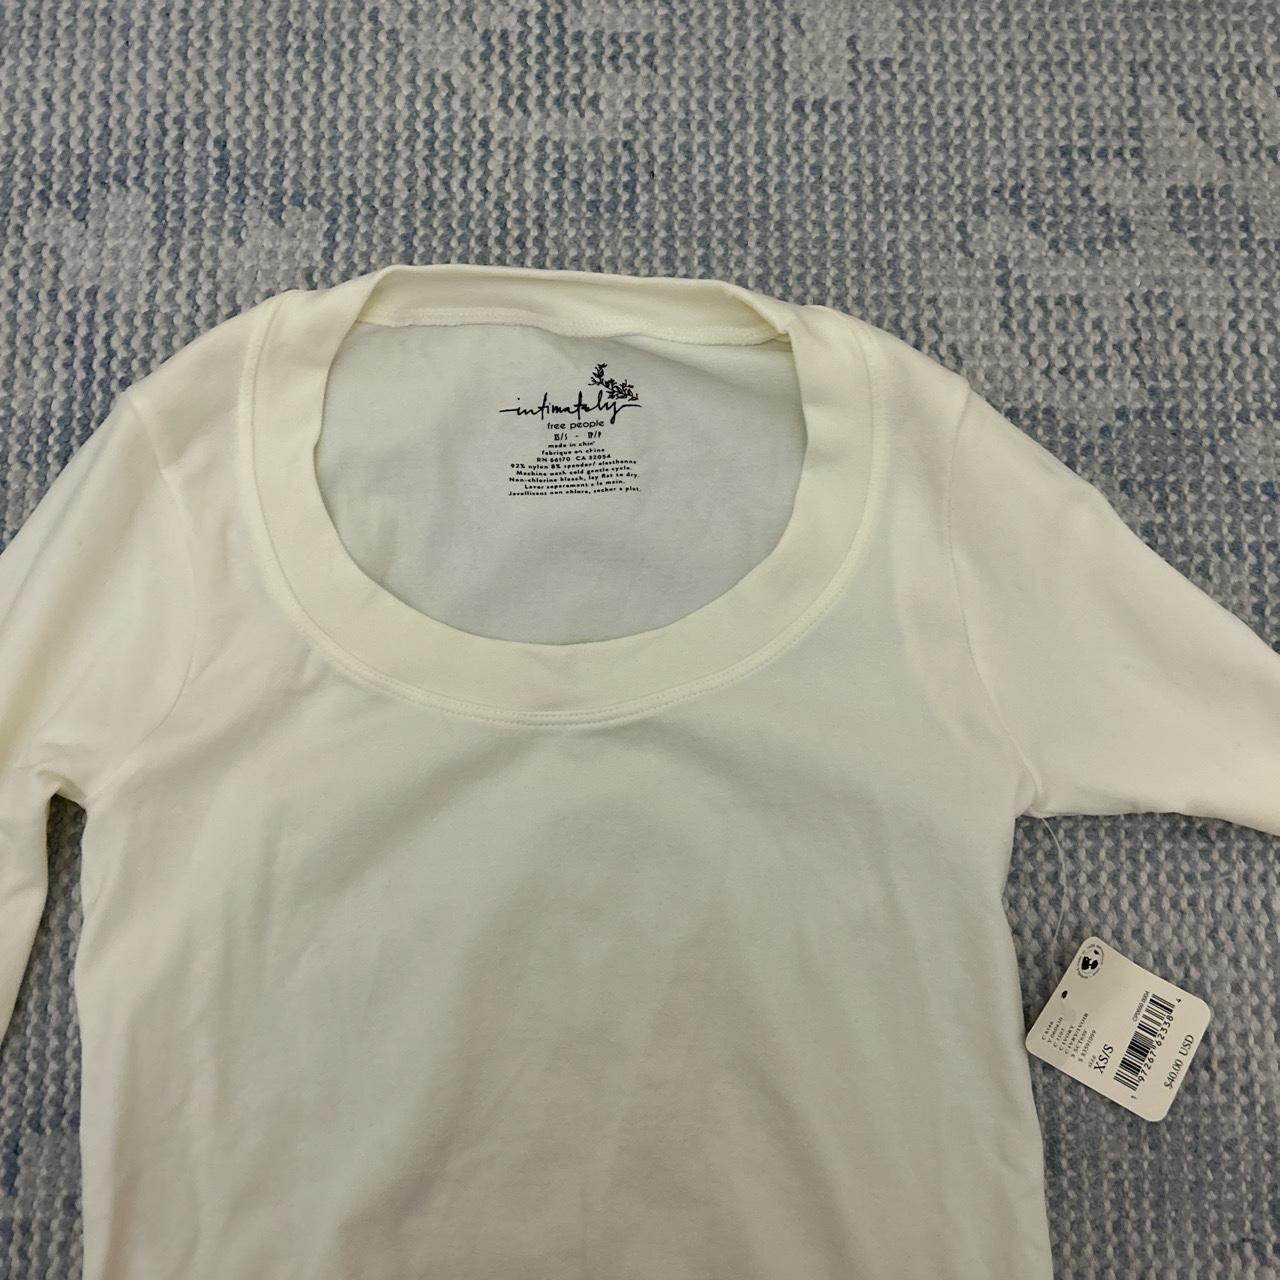 Free People Women's Cream and White Shirt (4)